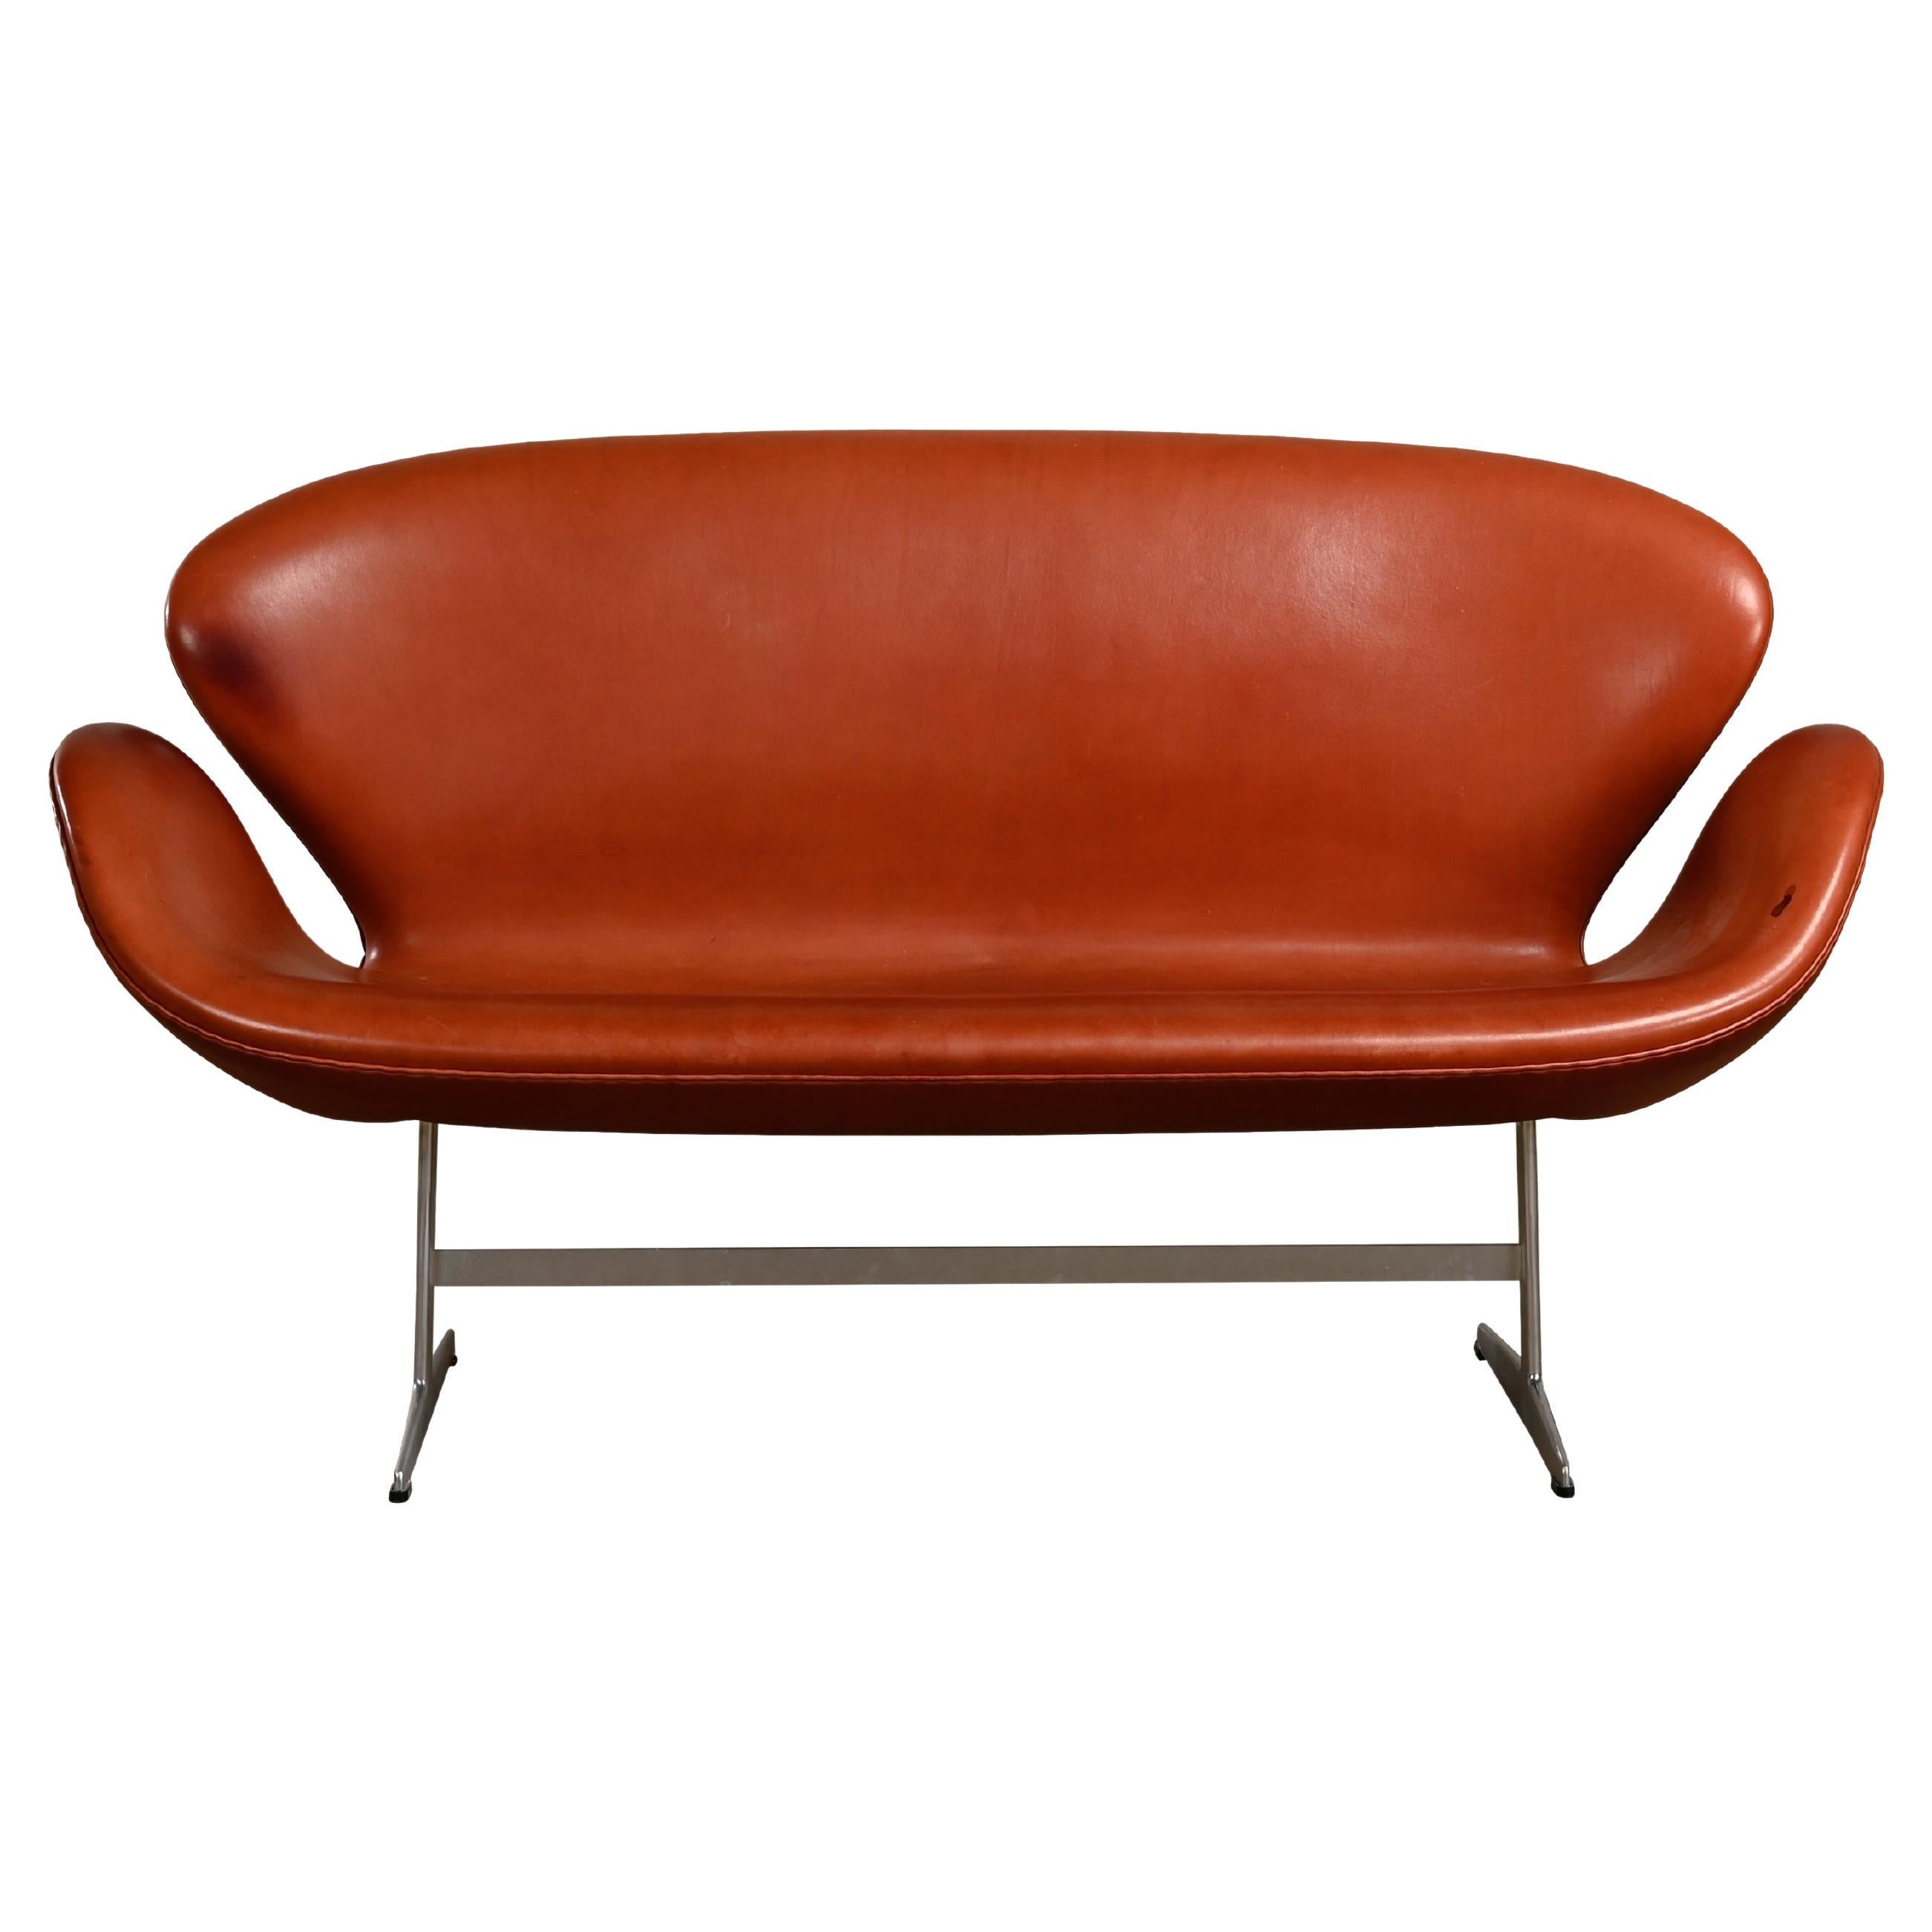 Arne Jacobsen Swan Sofa in Grace Walnut Leather for Fritz Hansen, Denmark 1958 For Sale